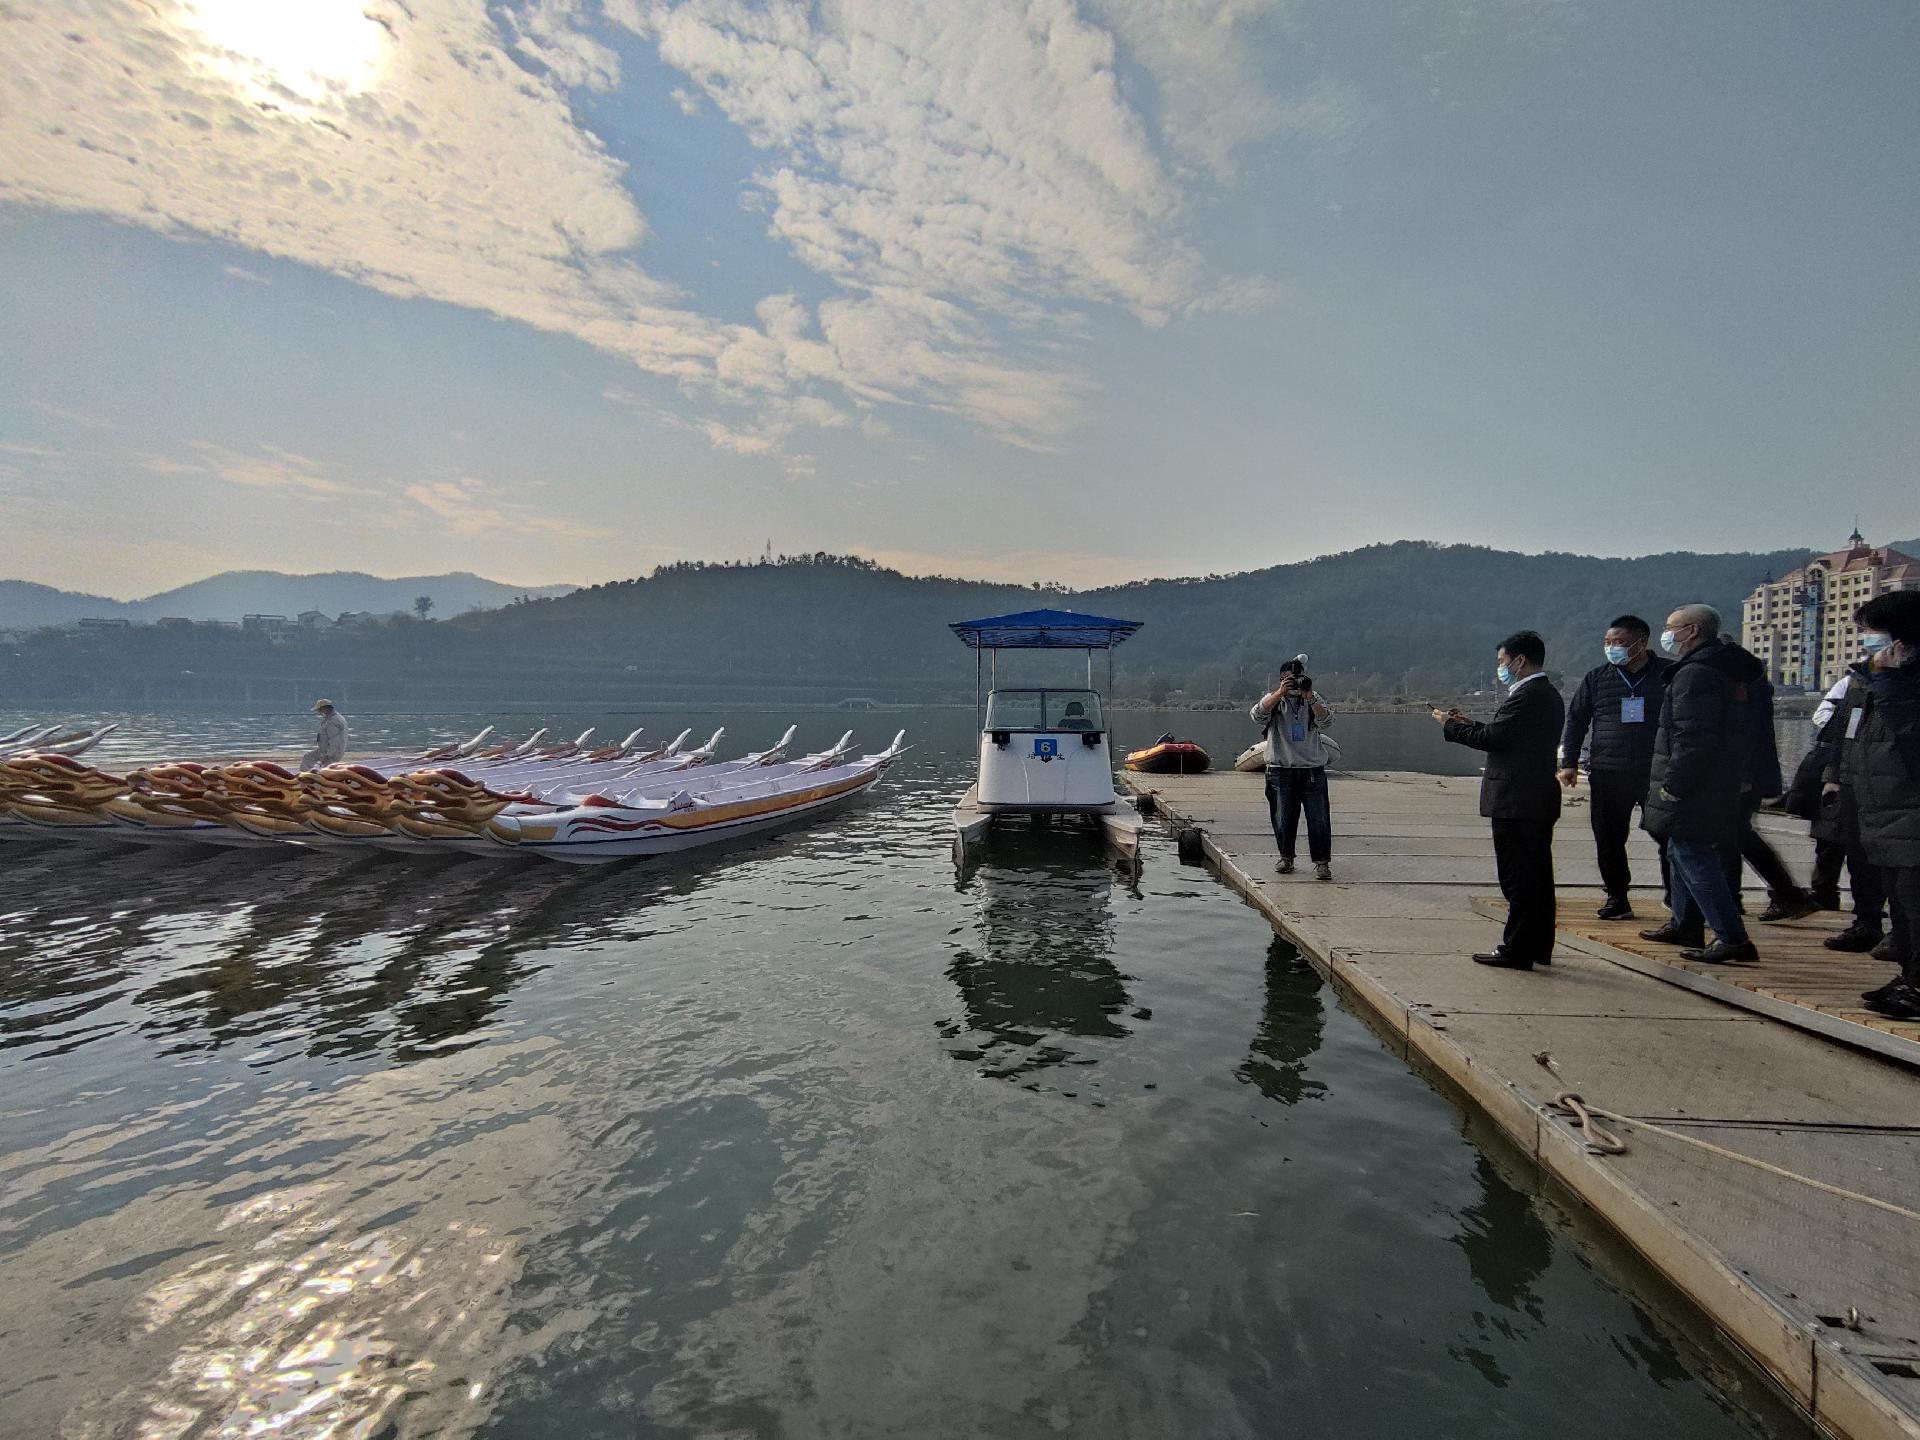 2021年全国皮划艇秋季冠军赛在丽水南明湖畔拉开帷幕